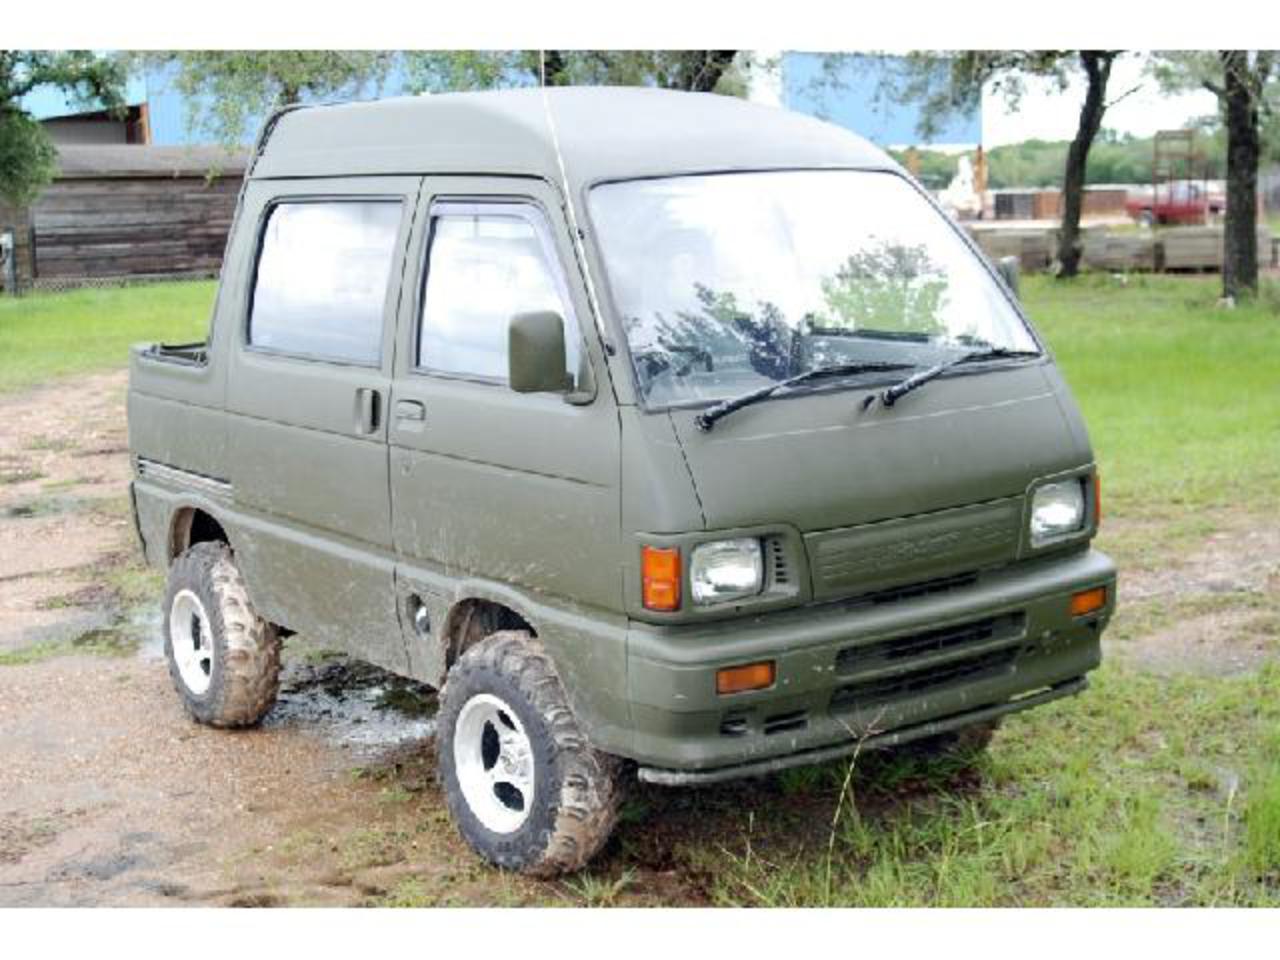 four door daihatsu hijet mini truck for sale - Classifieds: Buy ...